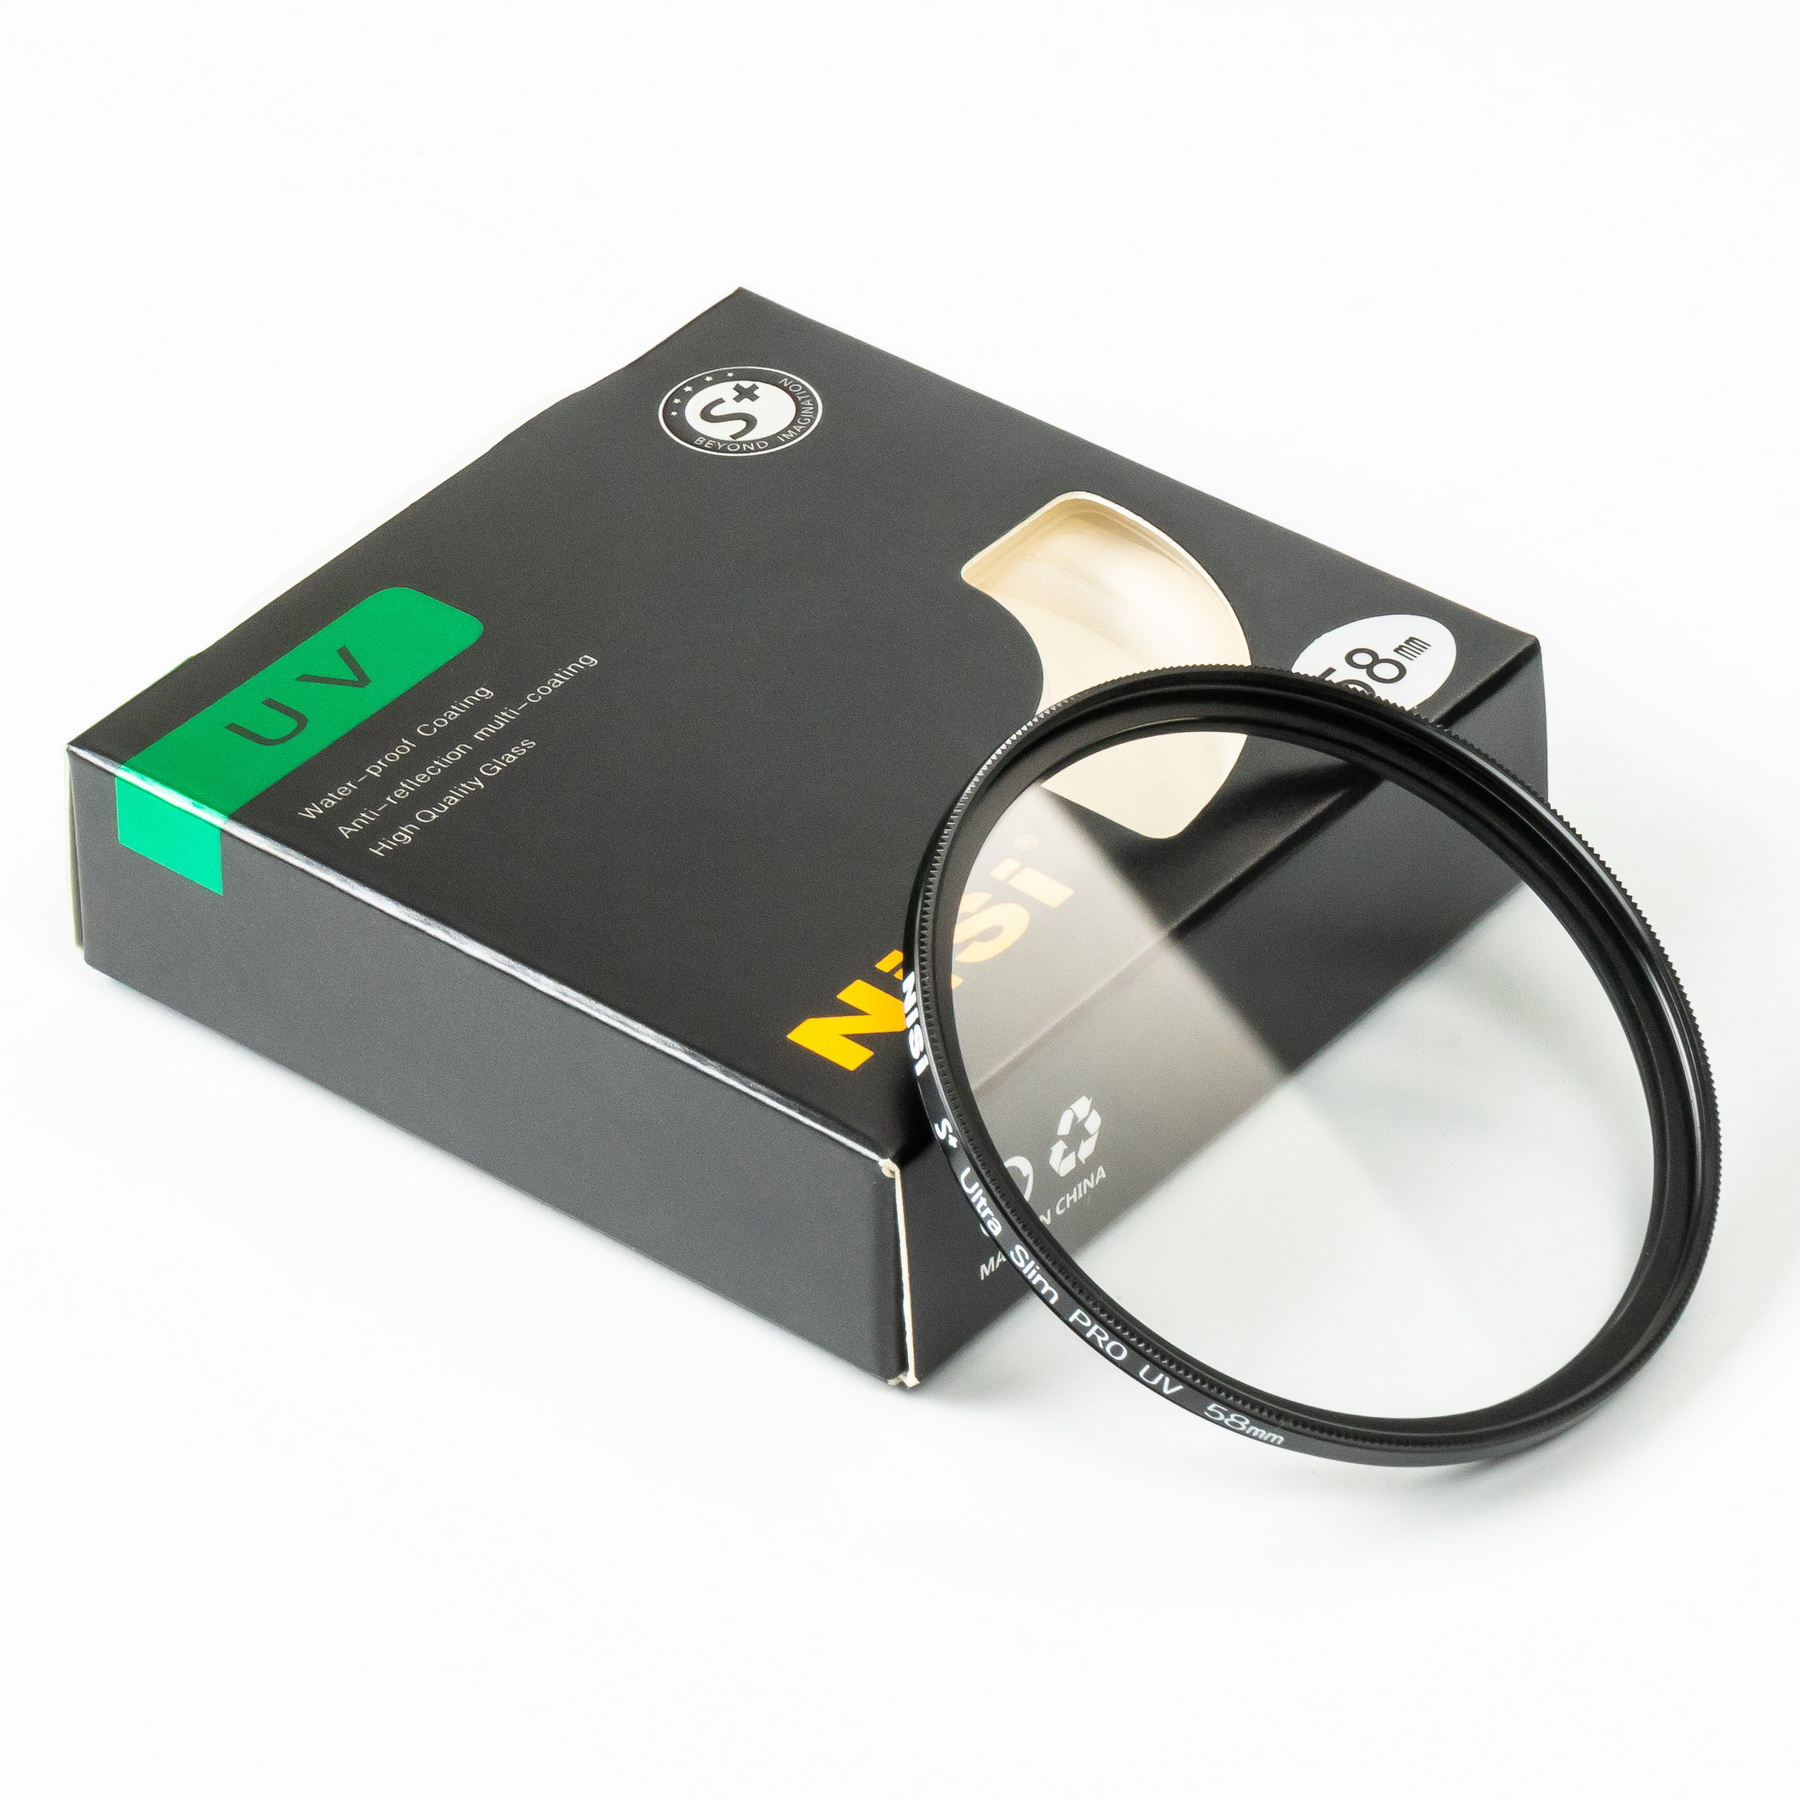 NISI 52mm UV Filter ที่กรองรังสียูวีโซด์ขนาดบางเป็นพิเศษ Professional ตัวกรองยูวีด้านคู่ 12 การเคลือบหลายชั้นกรอง ( NISI UV Filter 52mm )( ฟิลเตอร์ 52 มิลลิเมตร บางพิเศษ )